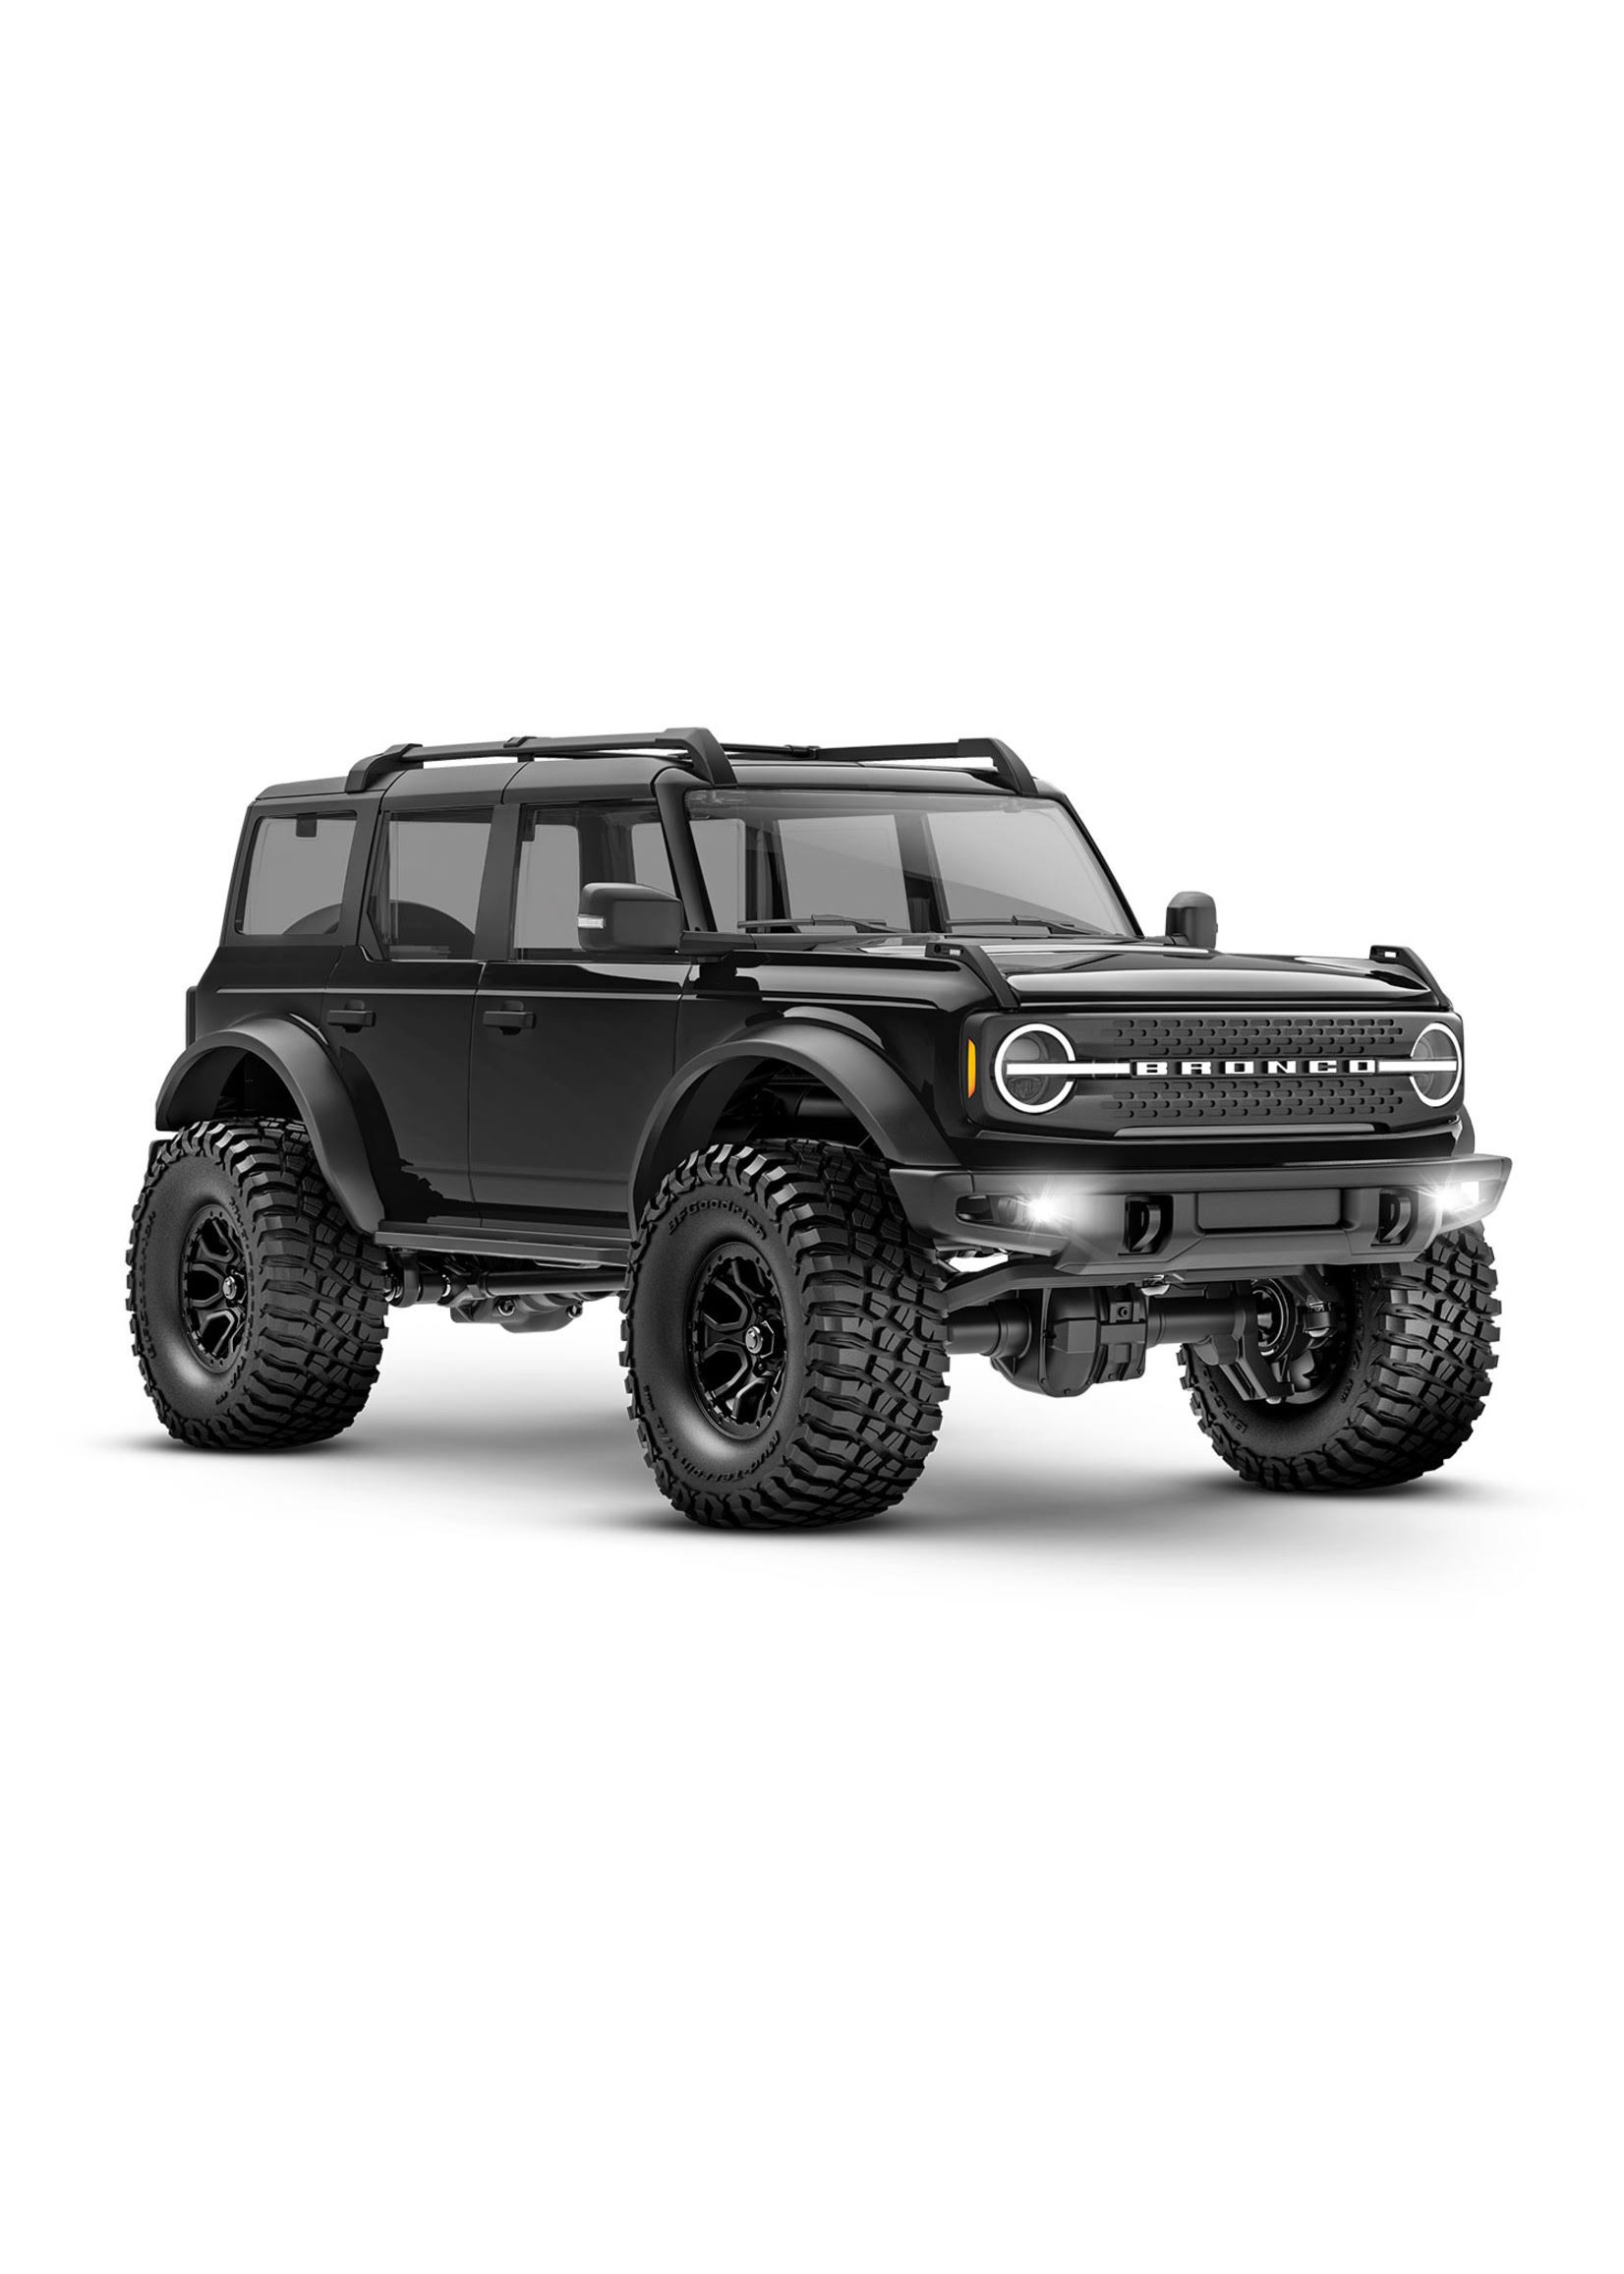 TRAXXAS TRX-4M 97074 Black Ford Bronco 4x4 Crawler RC New 1:18 RTR